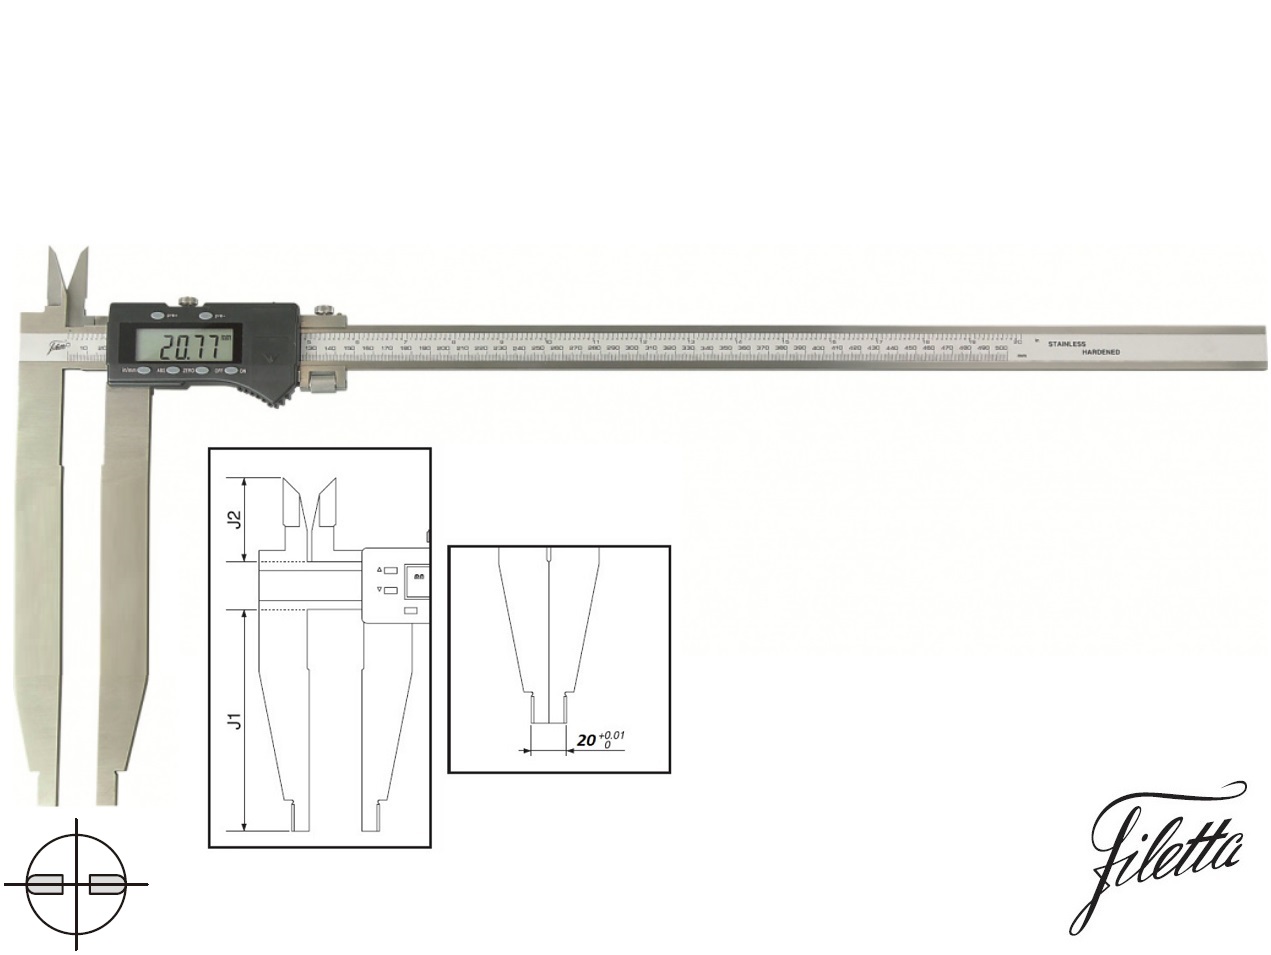 Digitální posuvné měřítko Filetta 0-500/150 mm s měřicími nožíky pro vnitřní měření